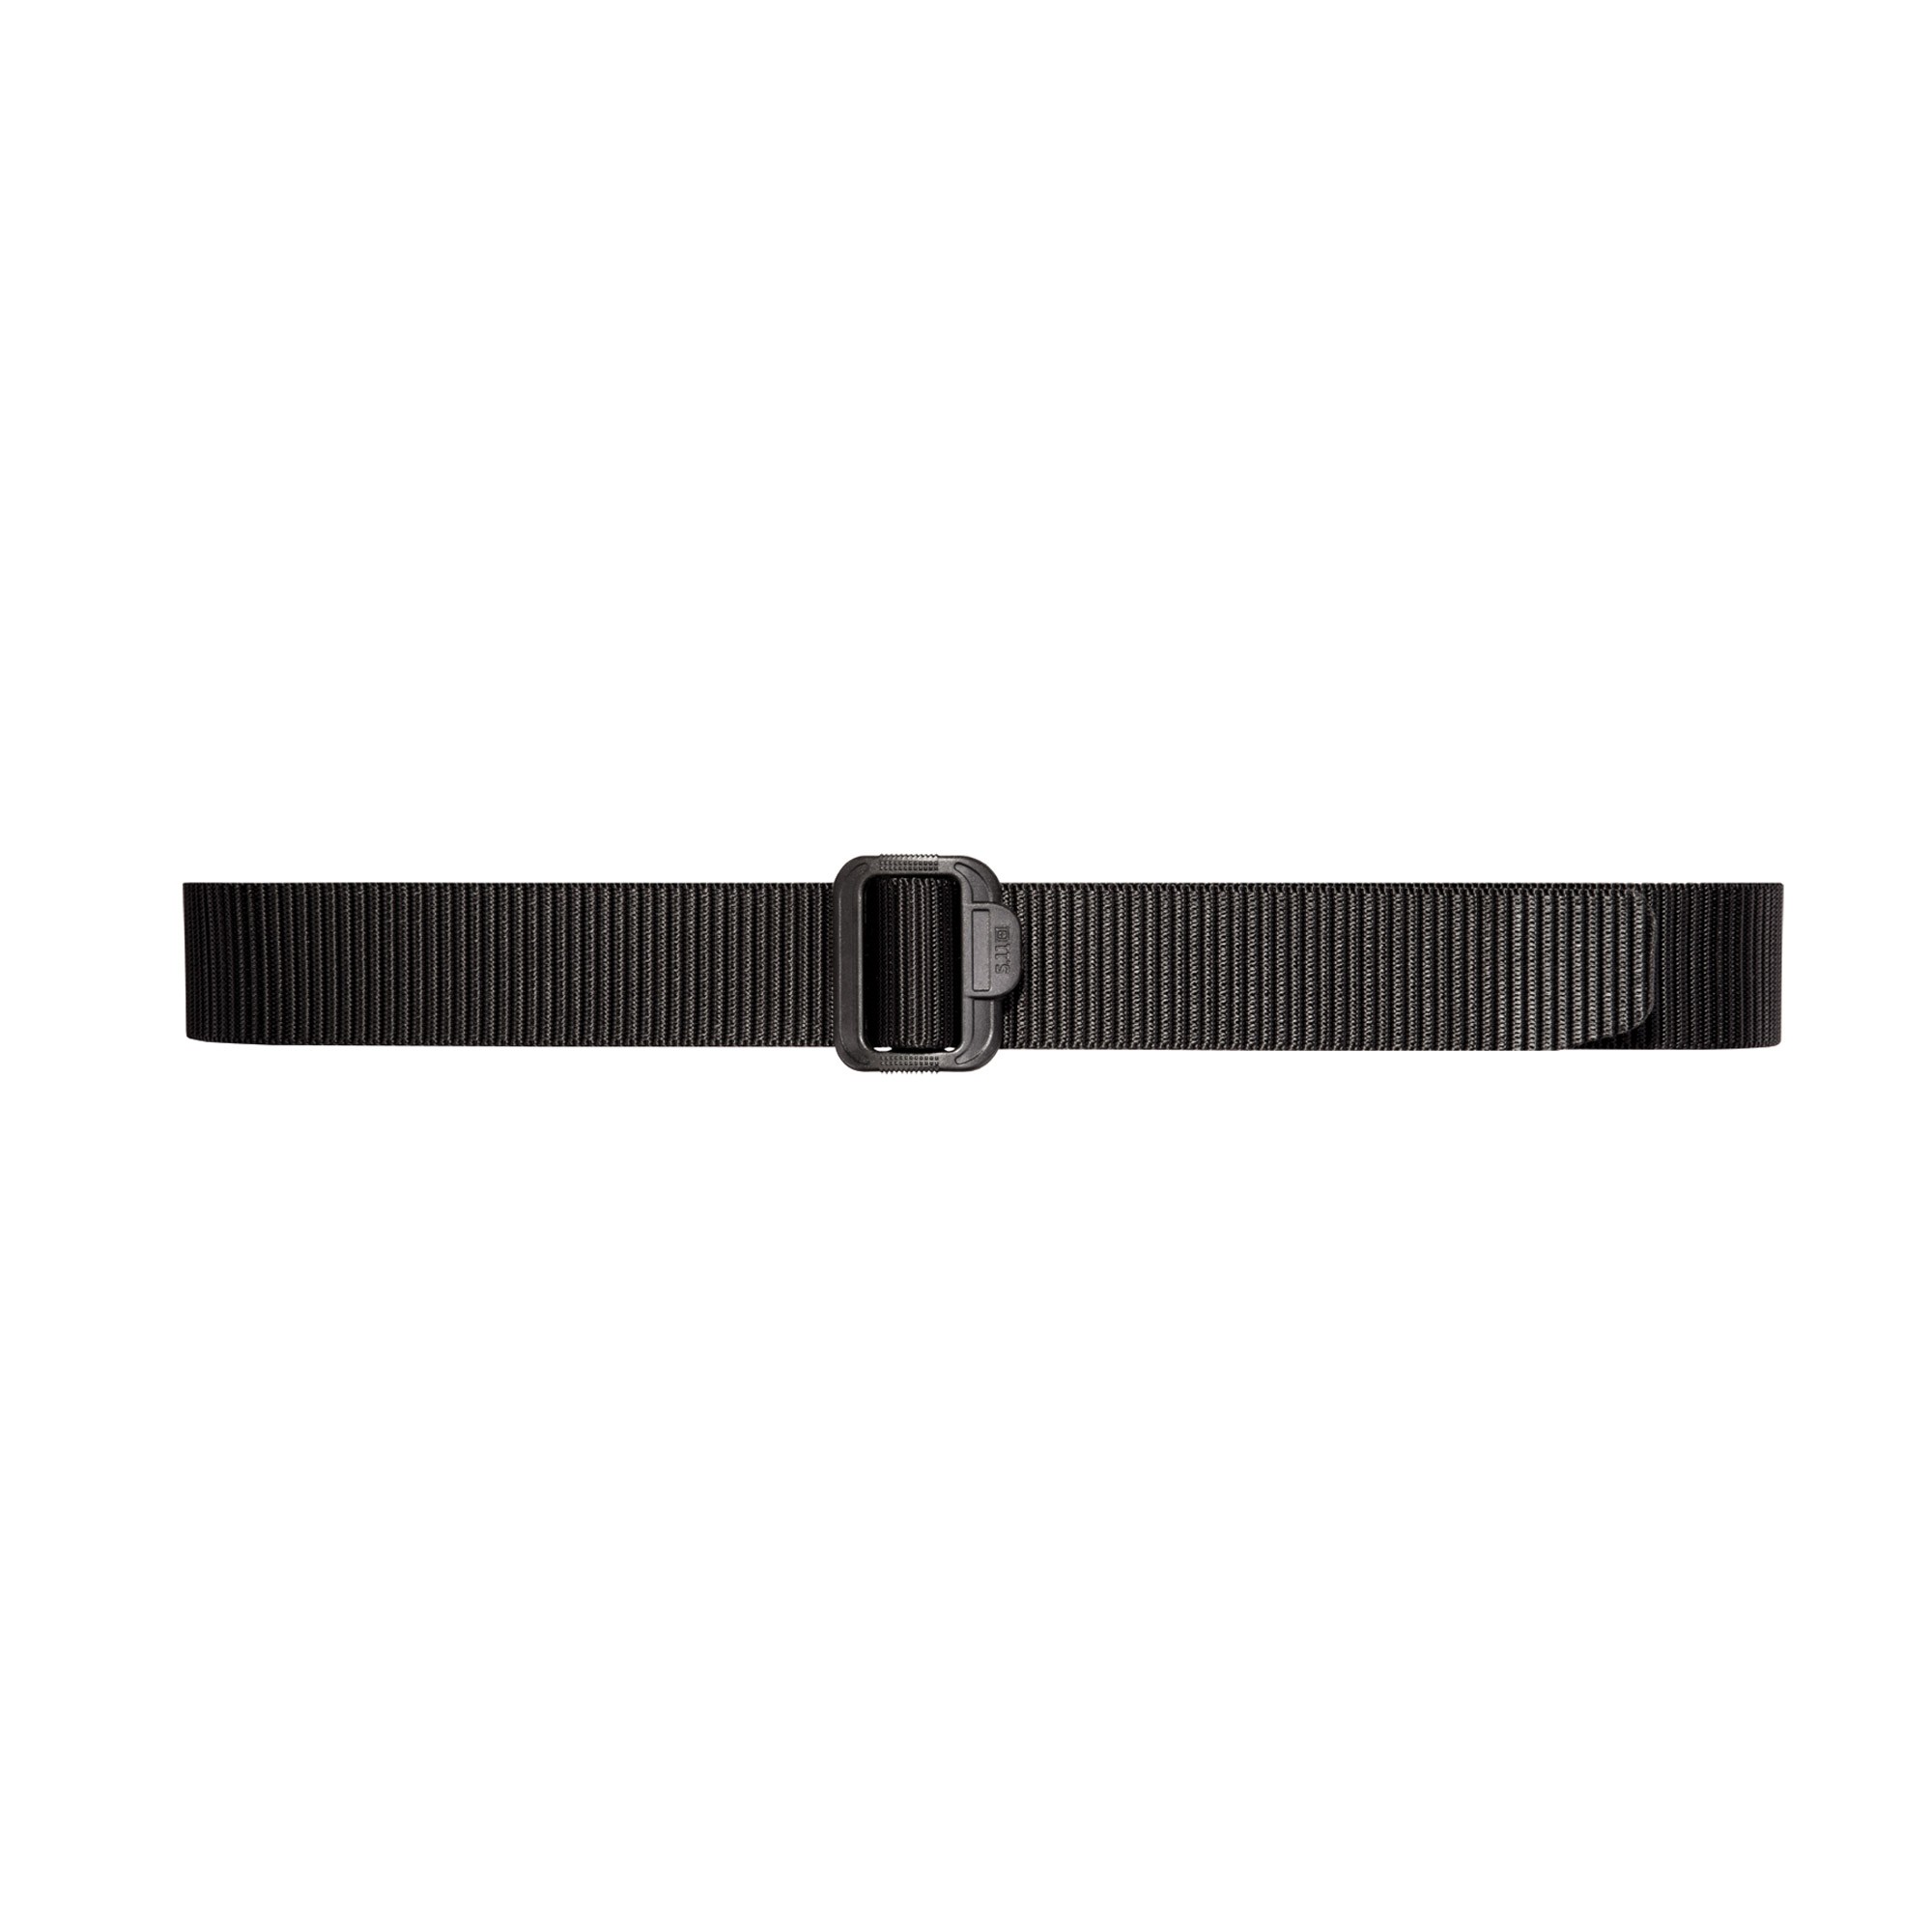 5.11 TDU Belt – 1.75″ Wide